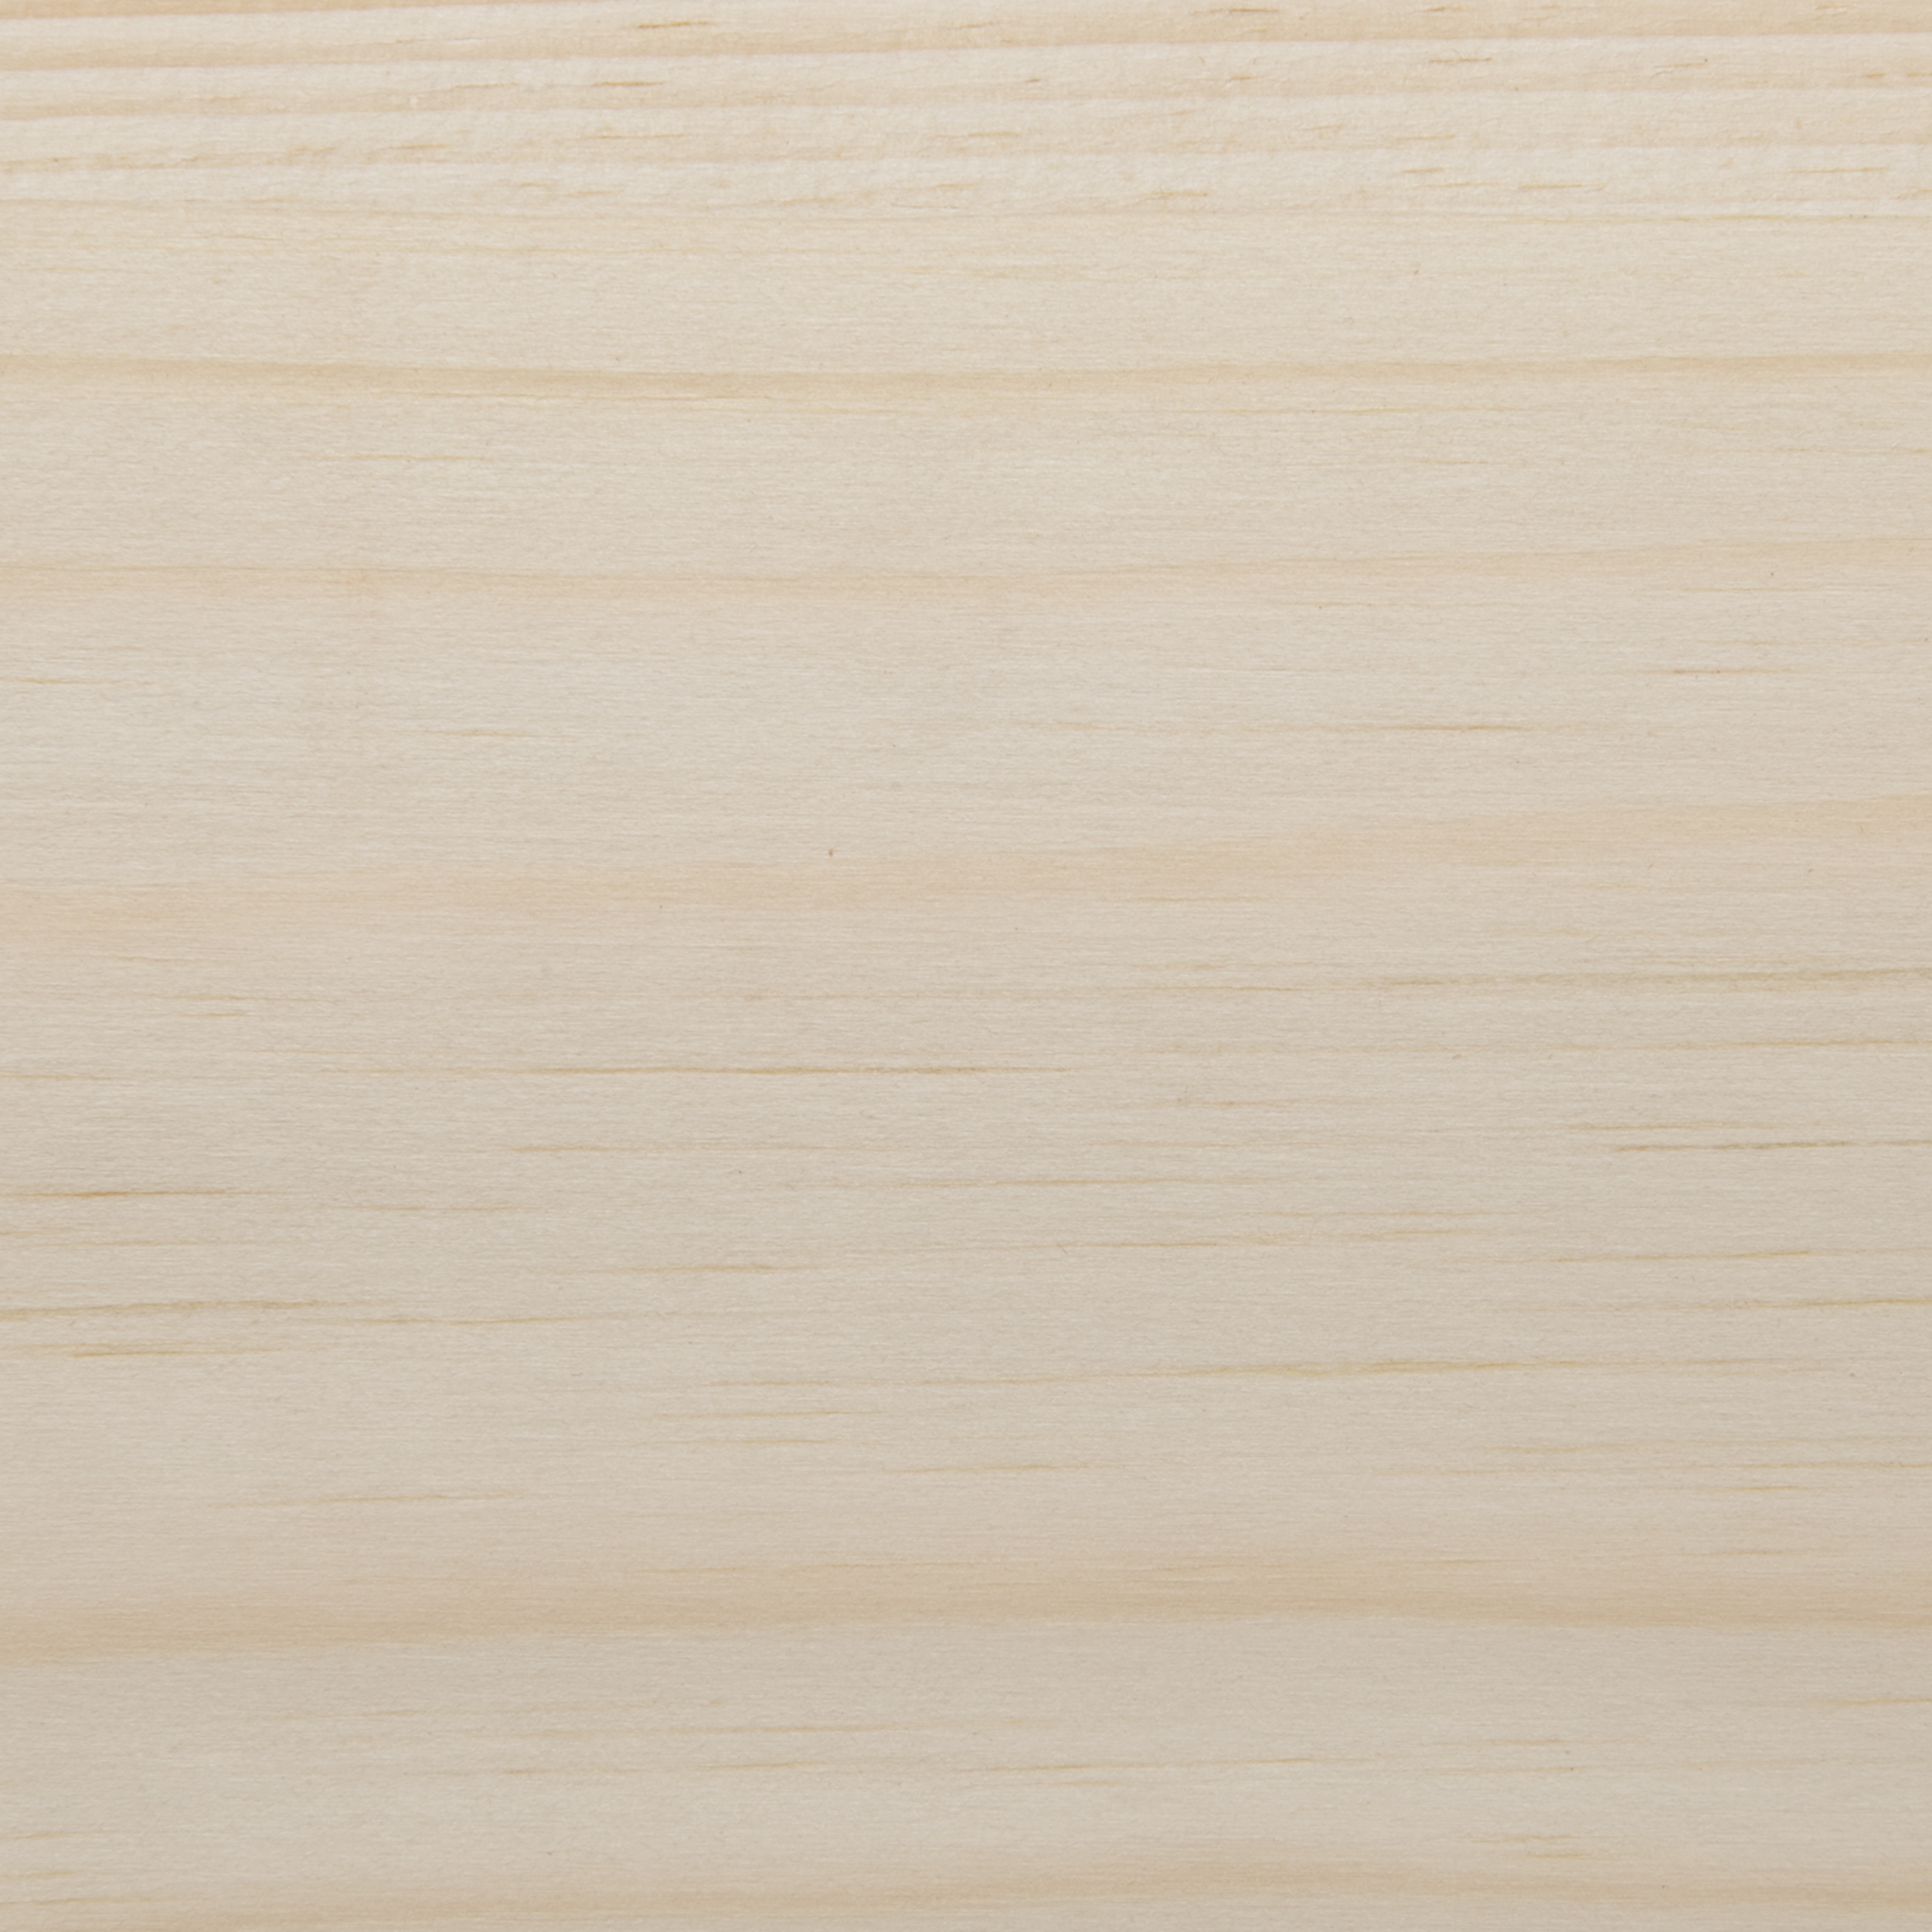 White Pine Veneer Sheet Plain Sliced 4